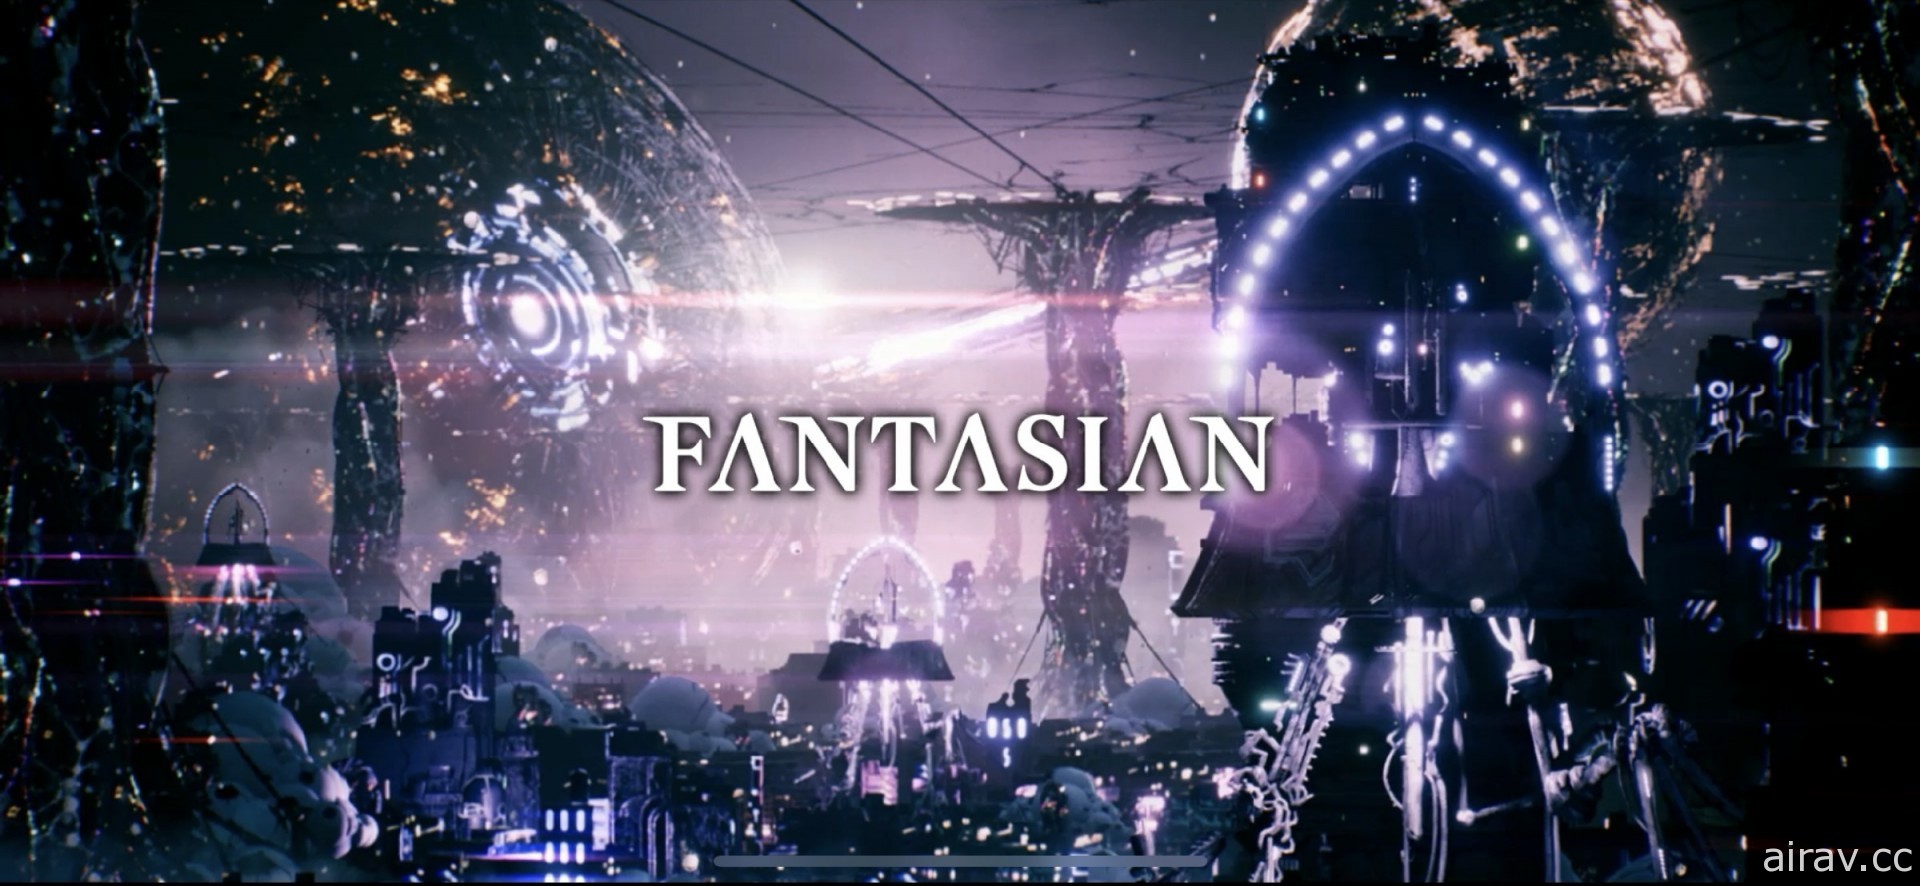 【试玩】坂口博信 x 植松伸夫最新力作《FANTASIAN》 延续《Final Fantasy》经典风格